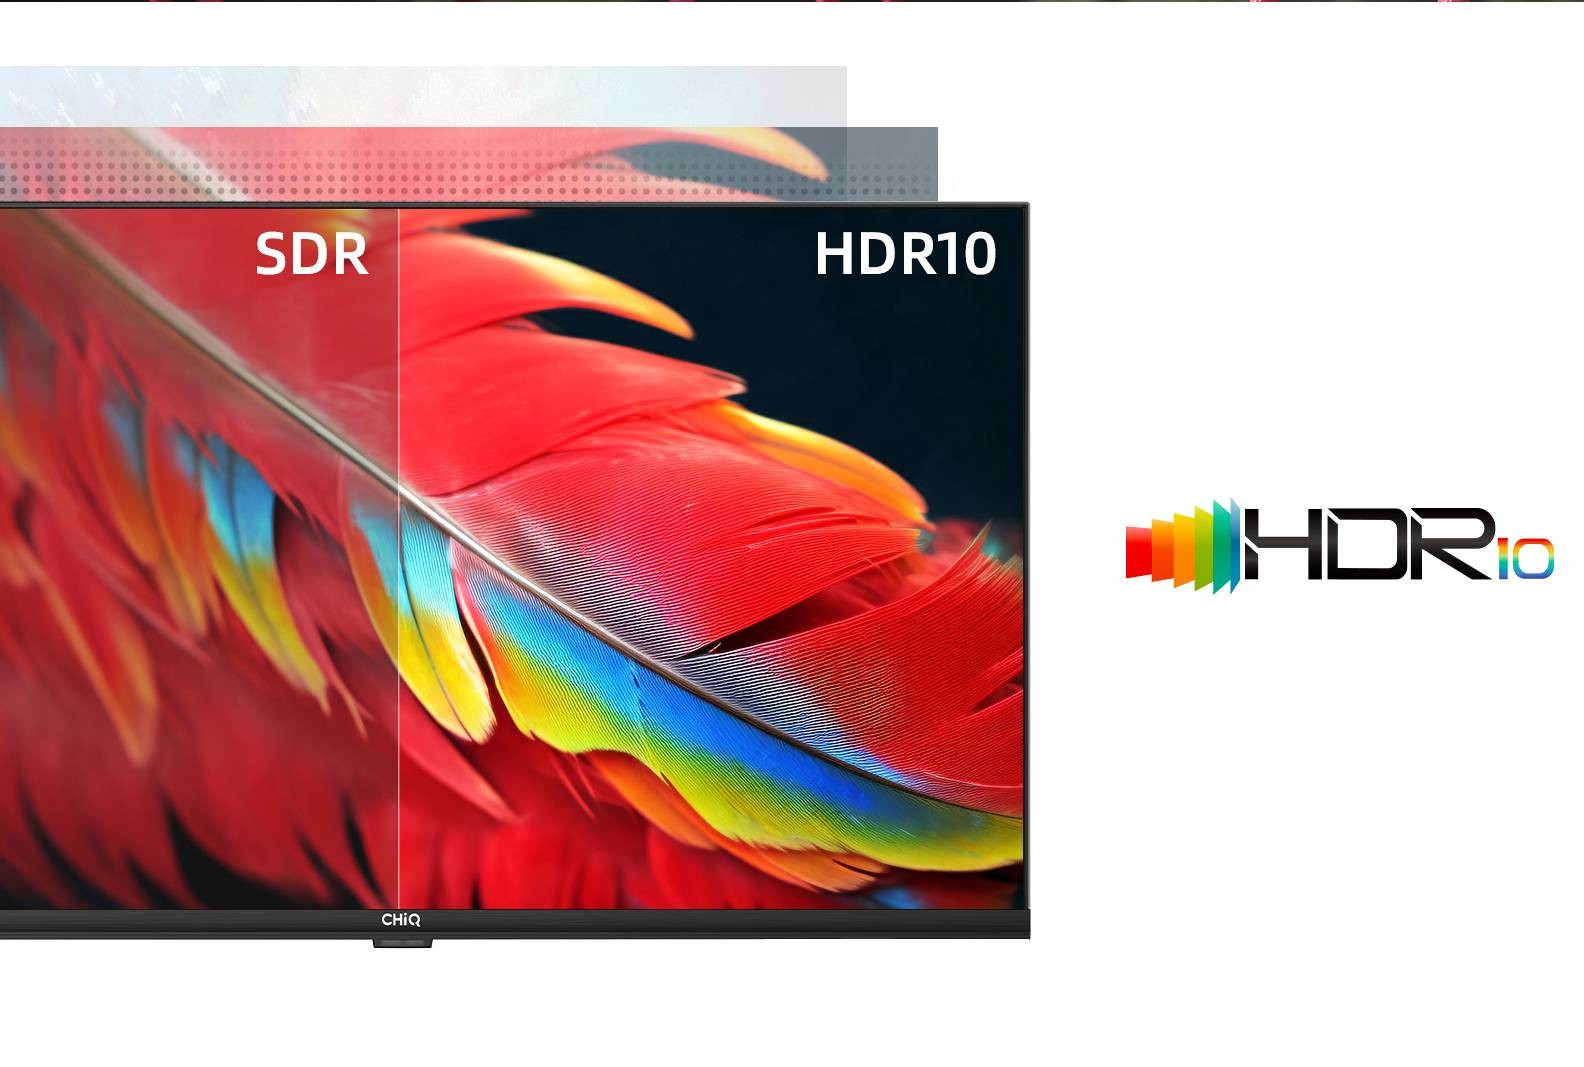 CHIQ TV LCD Full HD 100 cm  - L40G7B